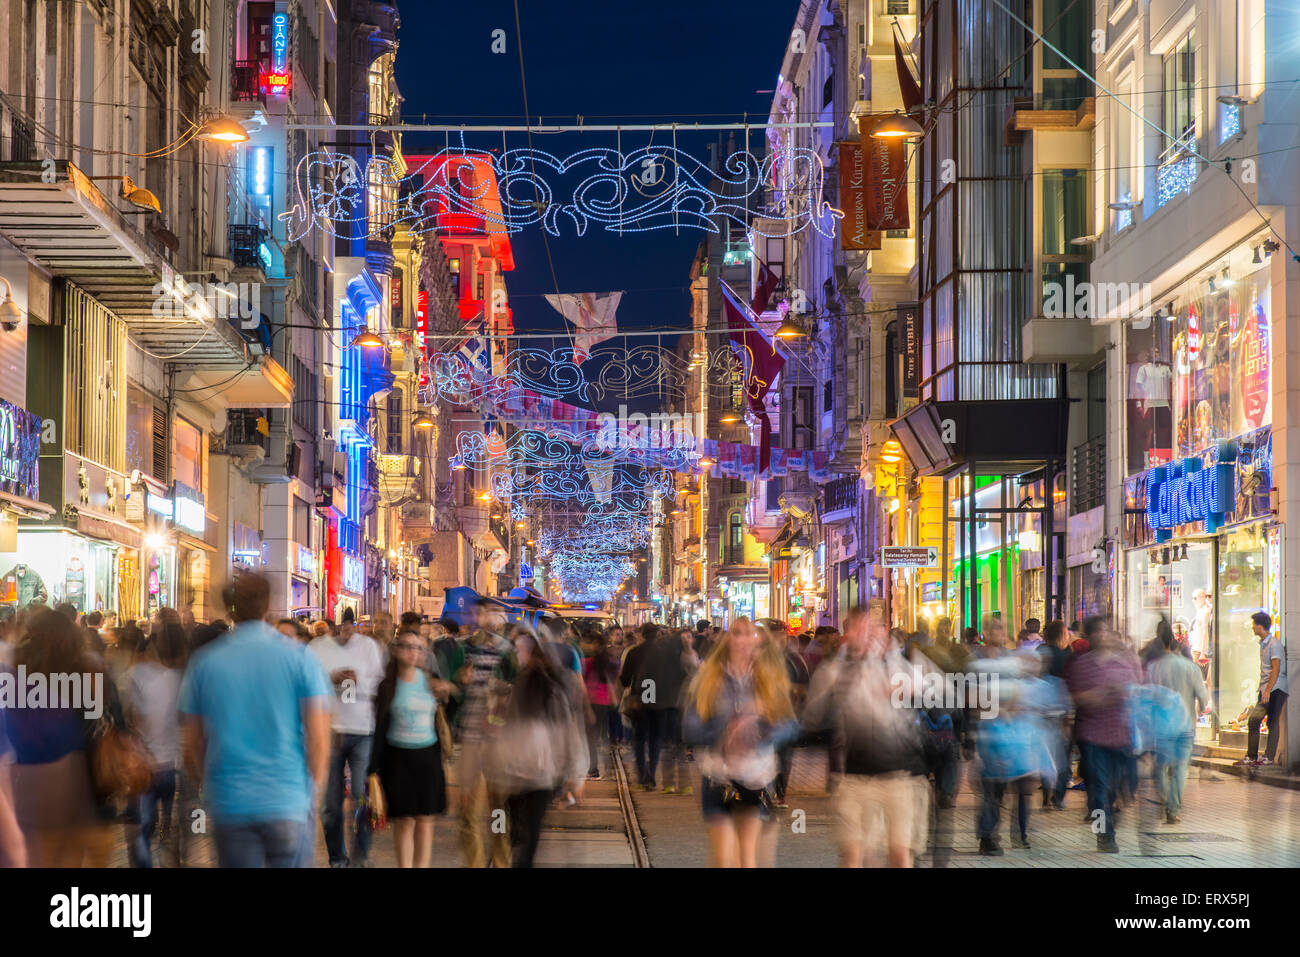 Vue de nuit sur la rue piétonne Istiklal Cadesi, Beyoglu, Istanbul, Turquie Banque D'Images